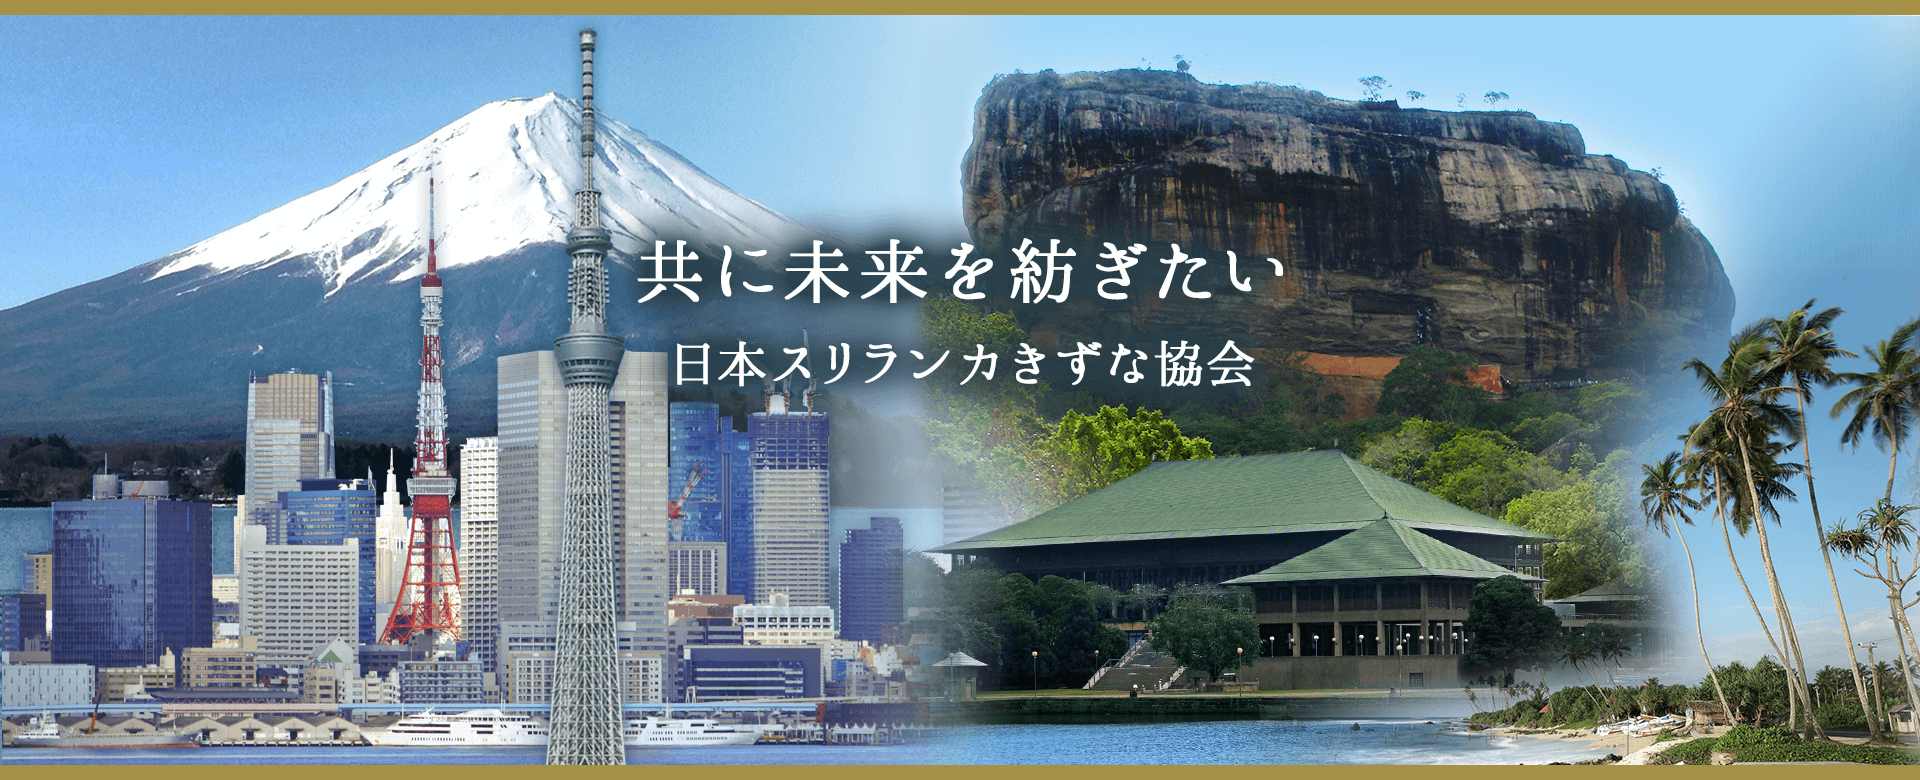 Japan-Sri Lanka Kizuna Association